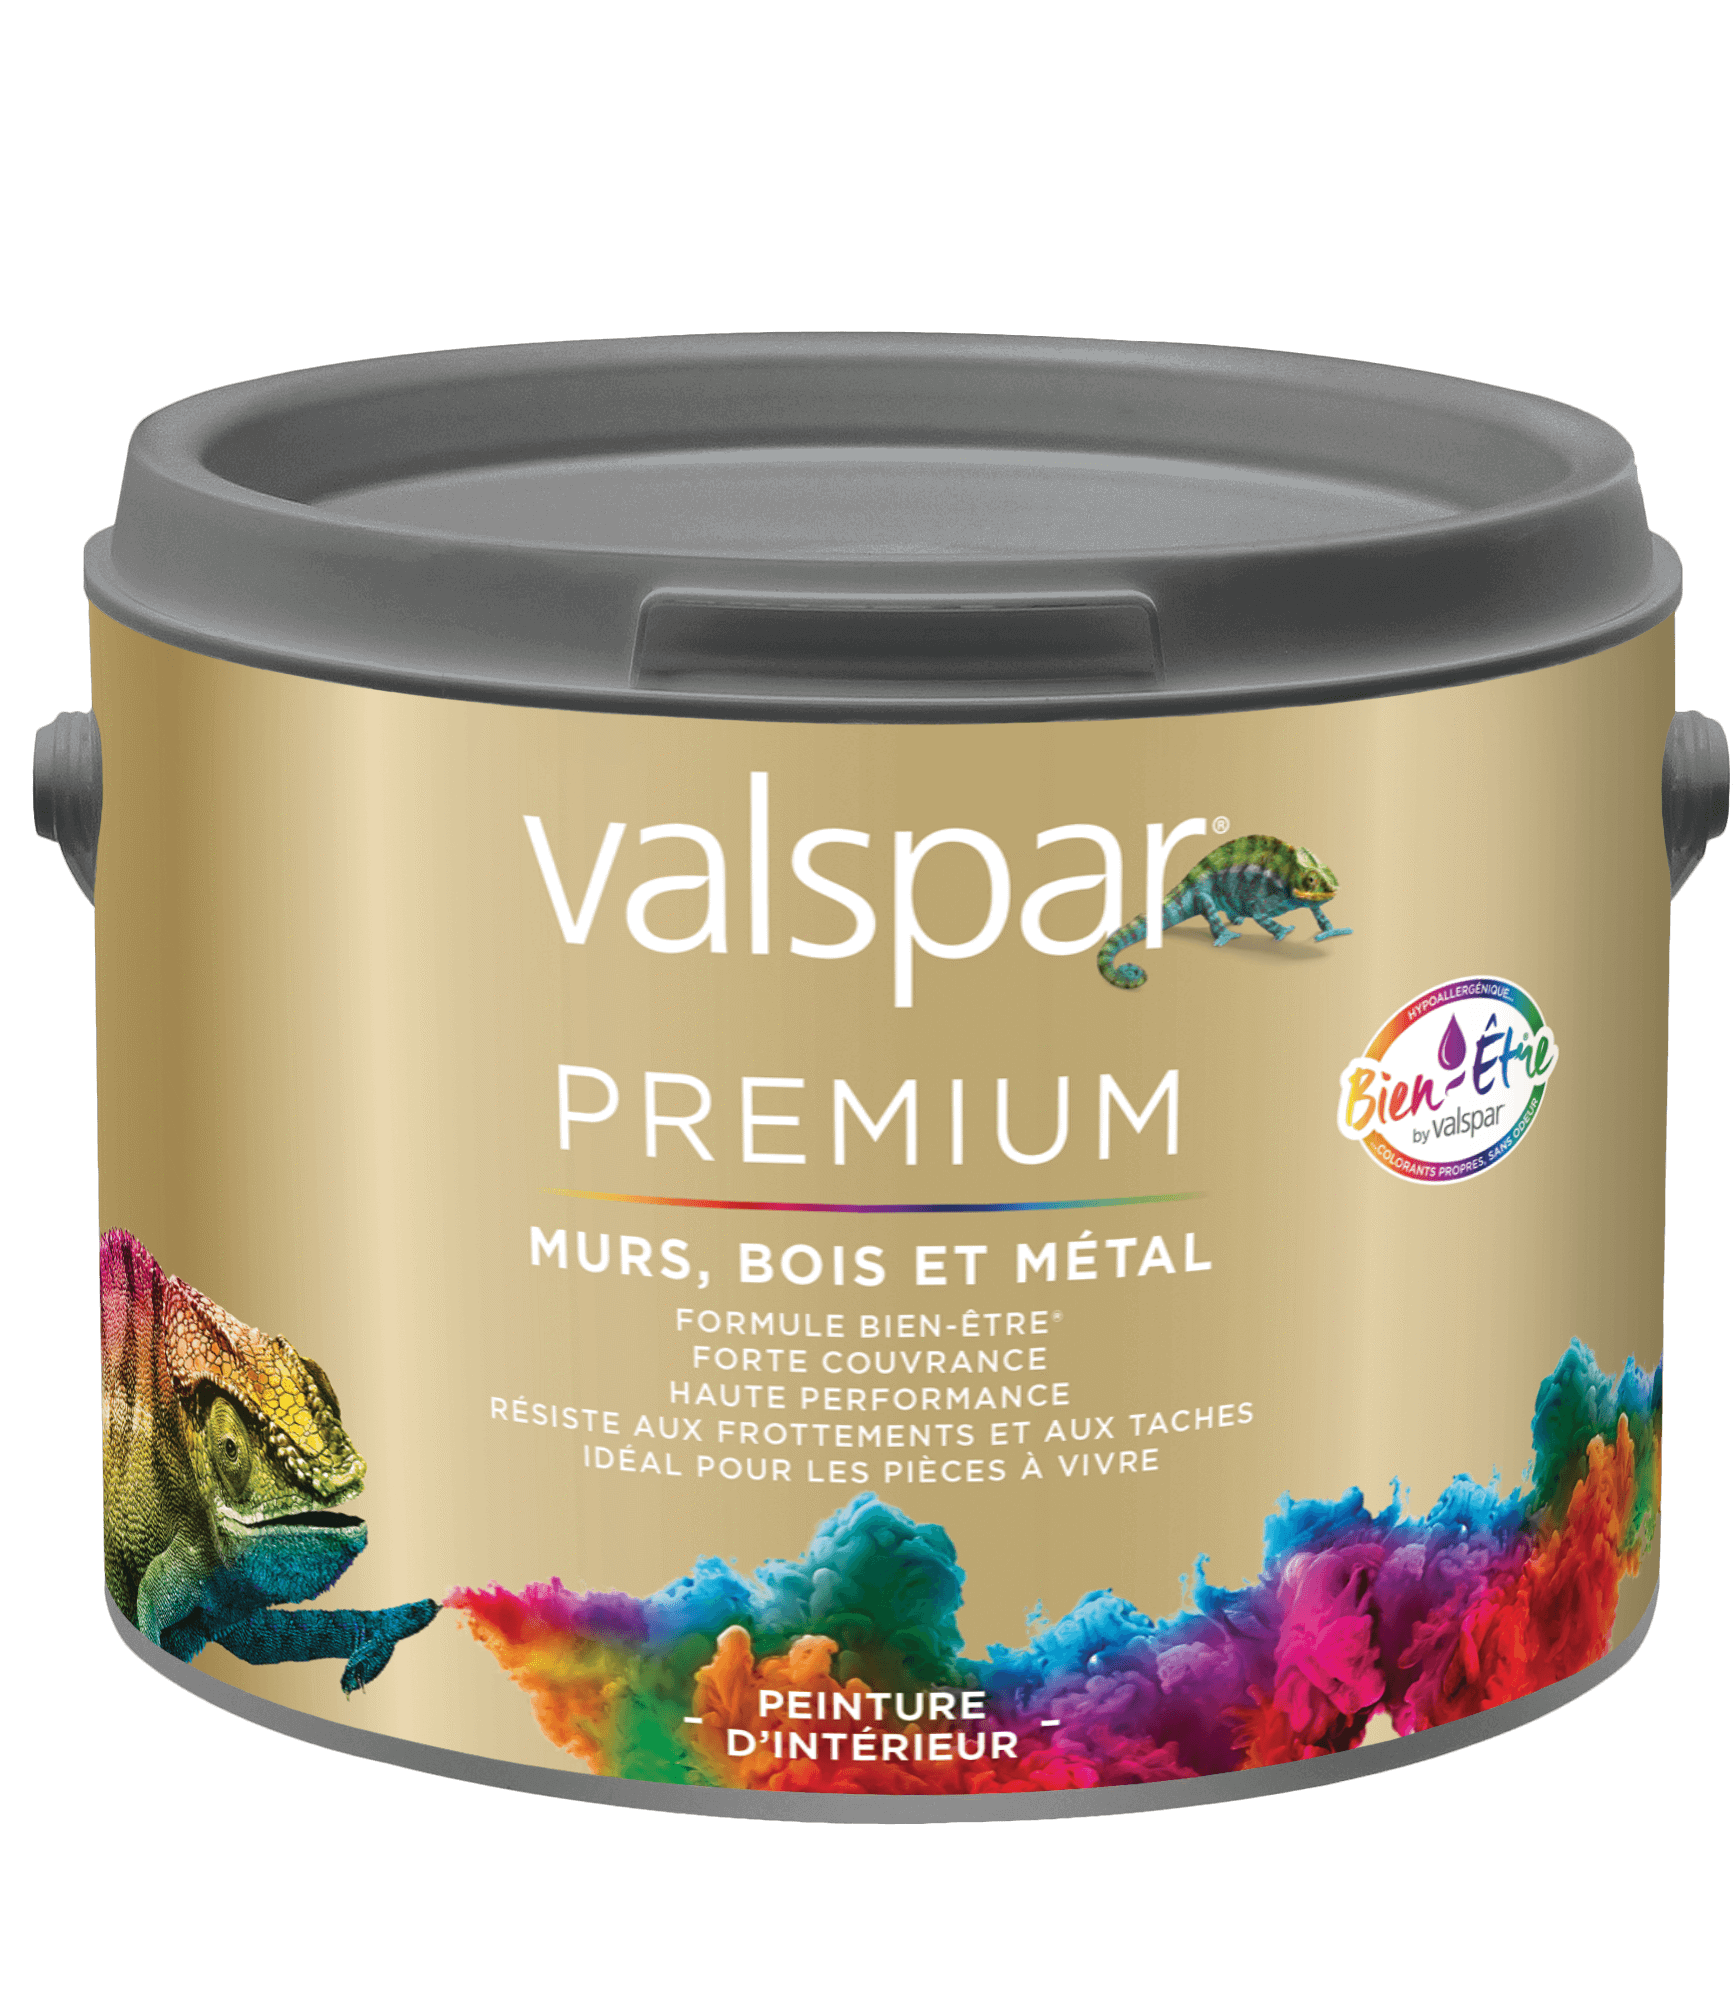 Valspar® Premium Murs, Bois et Métal